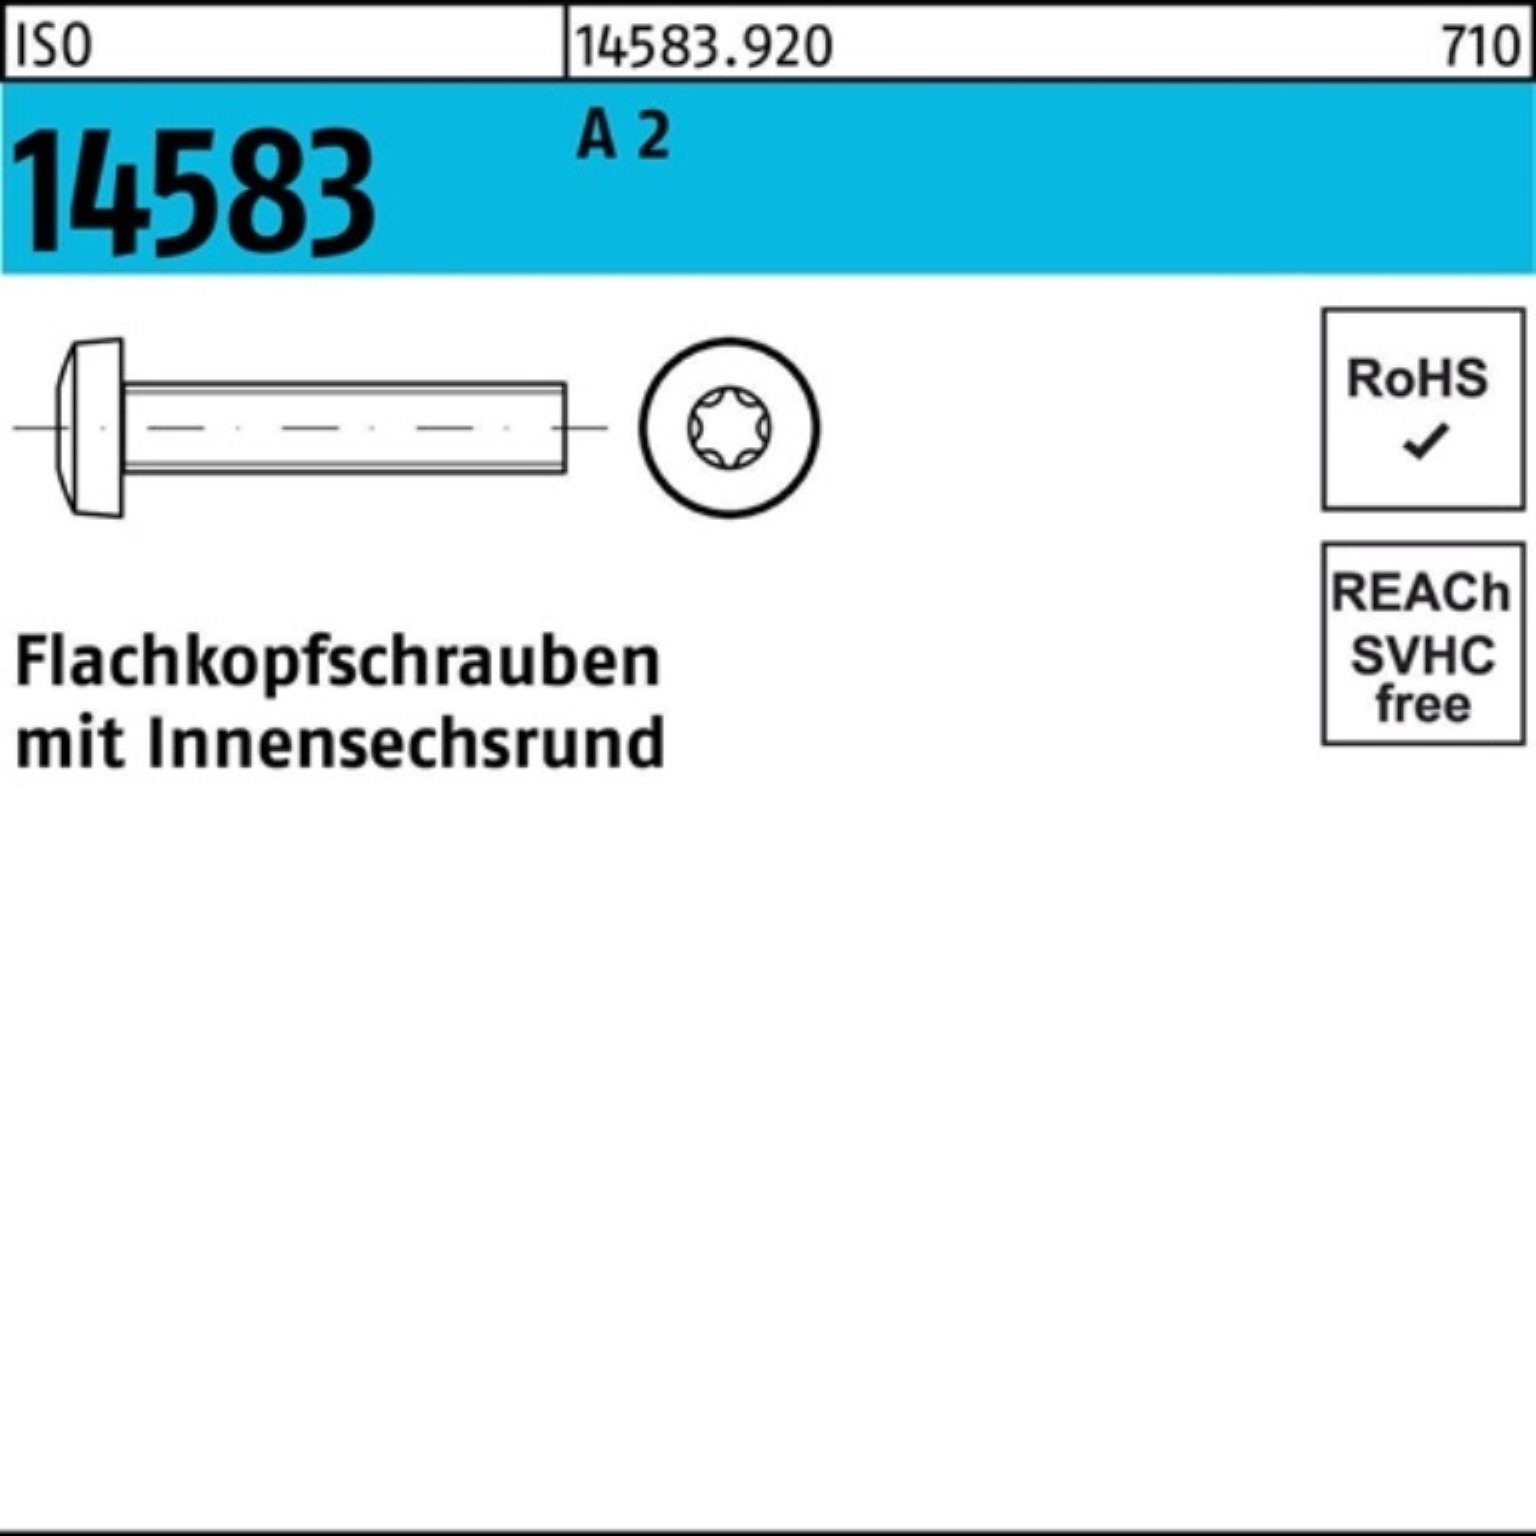 Reyher Schraube 1000er 2 Stück Pack IS 1000 A ISO M1,6x ISR Flachkopfschraube 6 14583